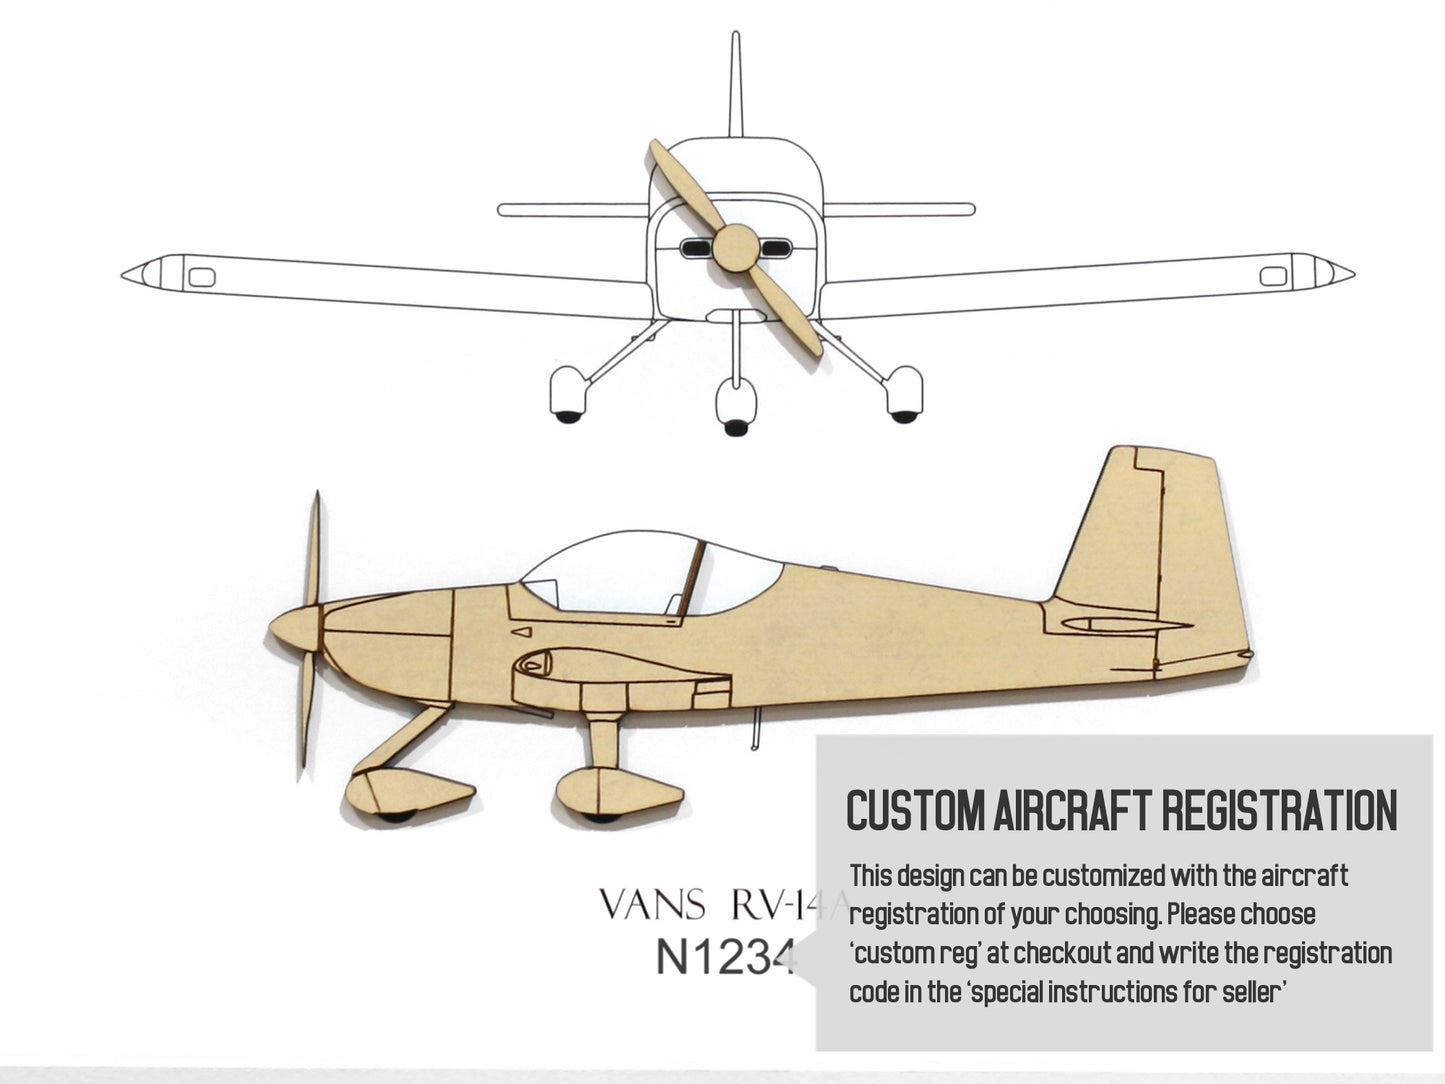 Vans RV-14A custom aviation art